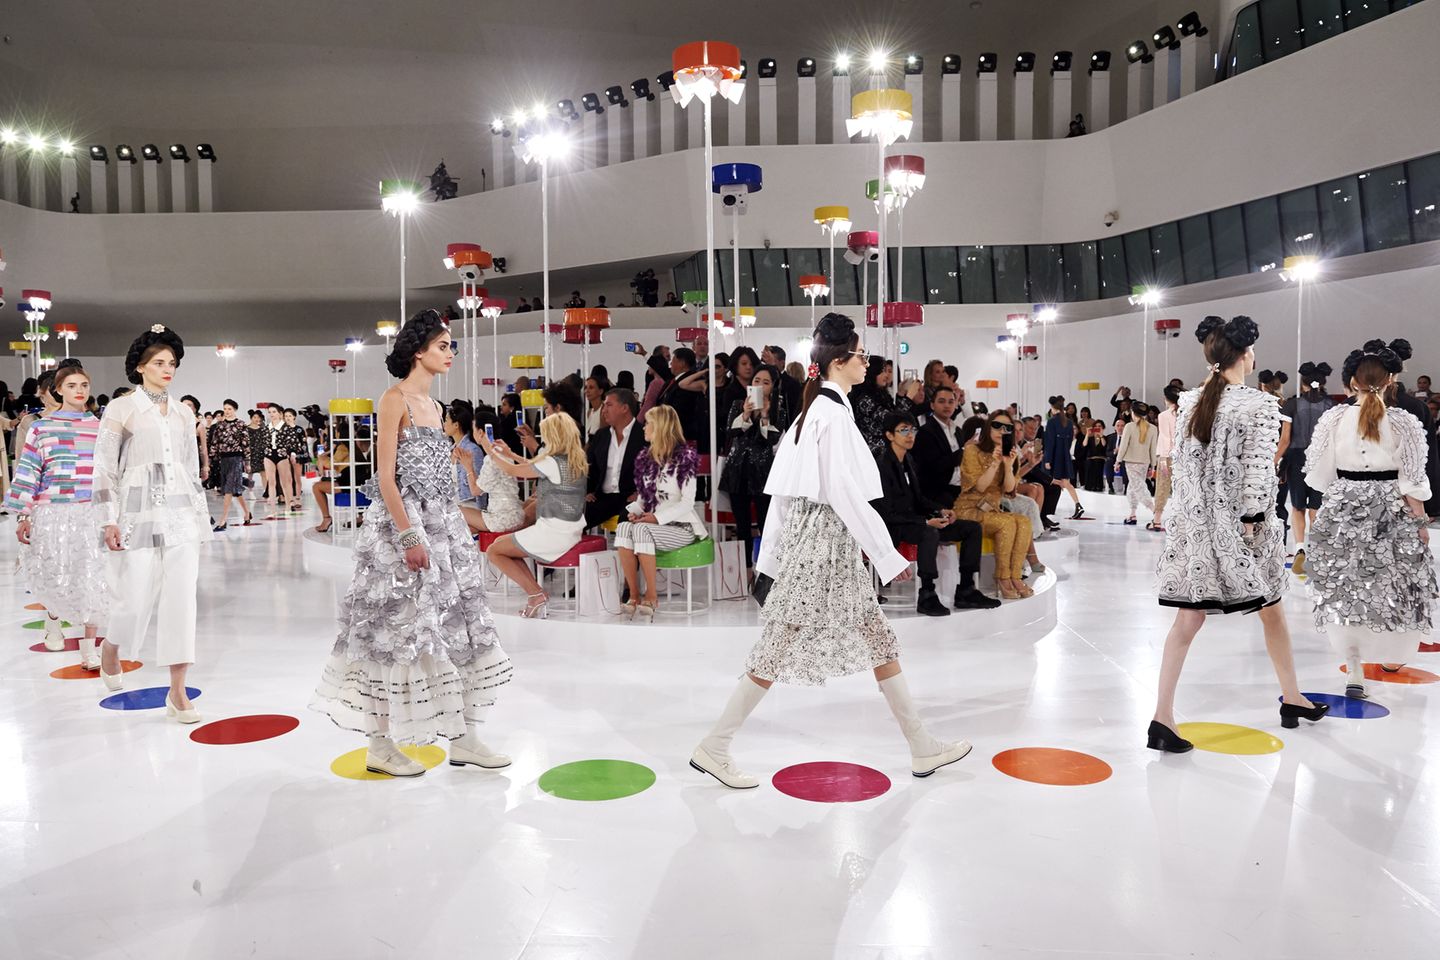 Für Chanels "Croisière Seoul 2015/16 Kollektion" hatte Kreativdirektor Karl Lagerfeld in den futuristisch anmutenden "Dongdaemun Design Plaza" der Stararchitektin Zaha Hadid ins südkoreanische Seoul eingeladen. Die Zwischenkollektion, die im November in die Läden kommt, soll die Brücke zwischen der Wintermode 15/16 und der Sommermode 2016 sein. Von der traditionellen koreanischen Kleidung inspiriert, hatte Lagerfeld farbenfrohe Patchworkmuster mit dem typischen Chanel-Twist entworfen.